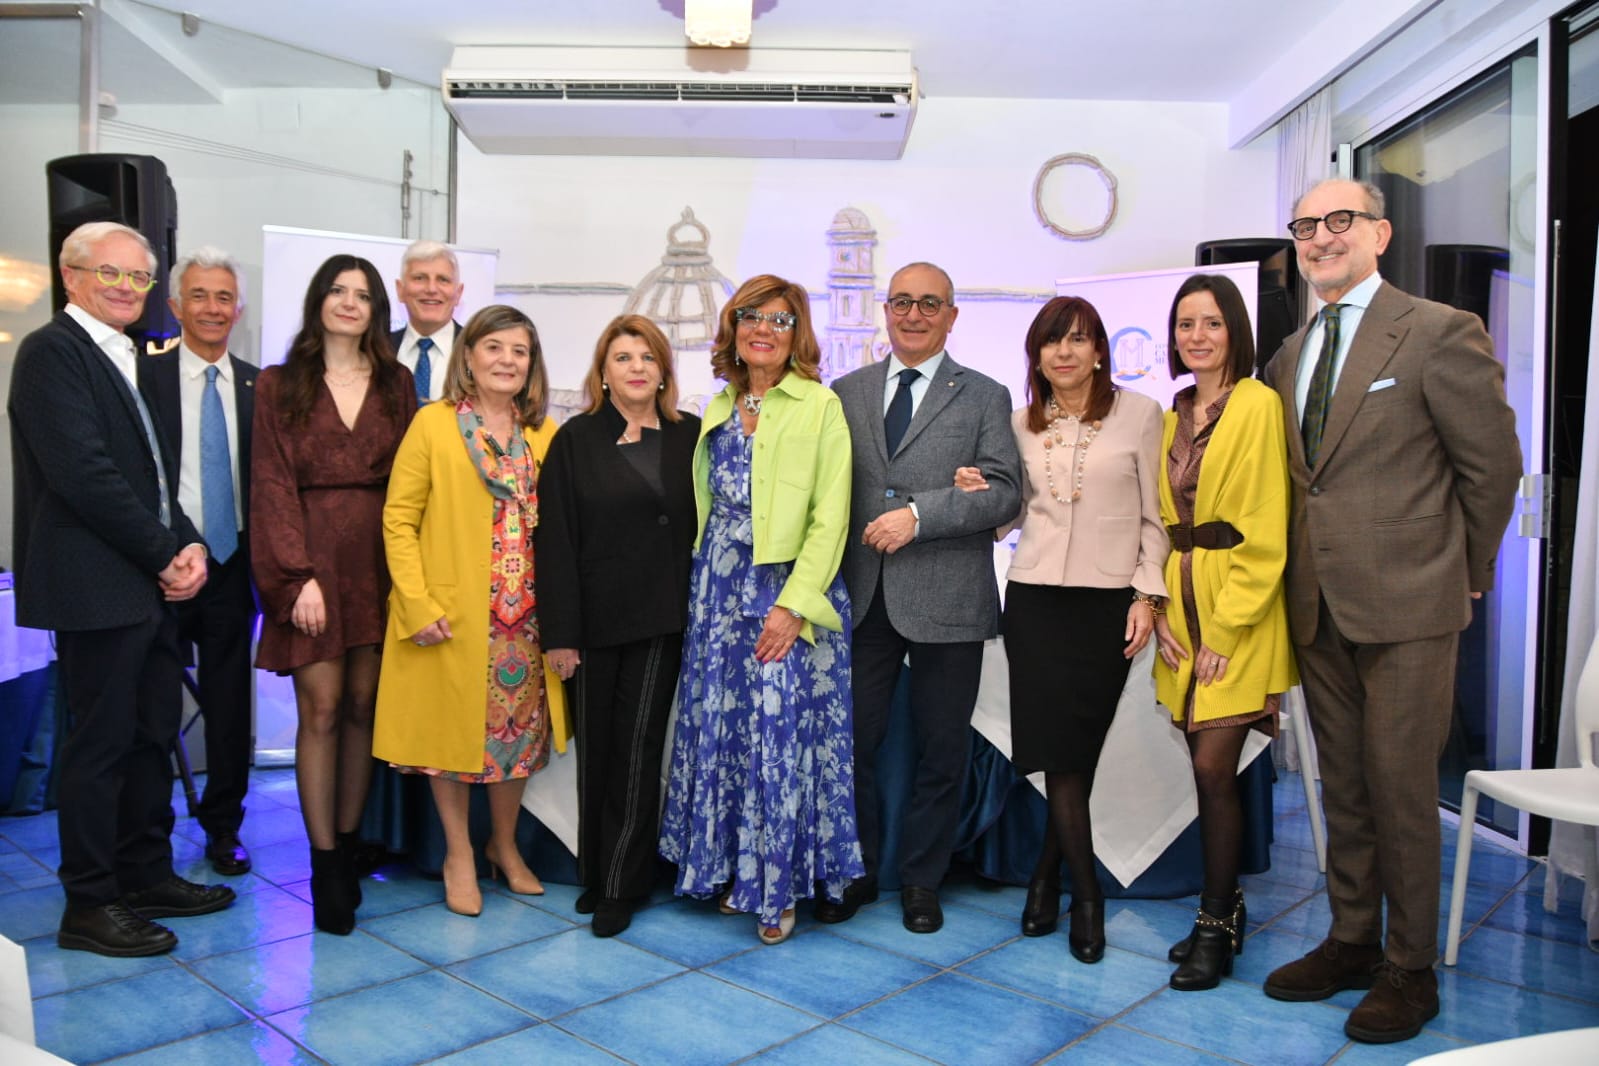 Salerno: Storia in cucina con la Scuola Medica salernitana, conferenza stampa